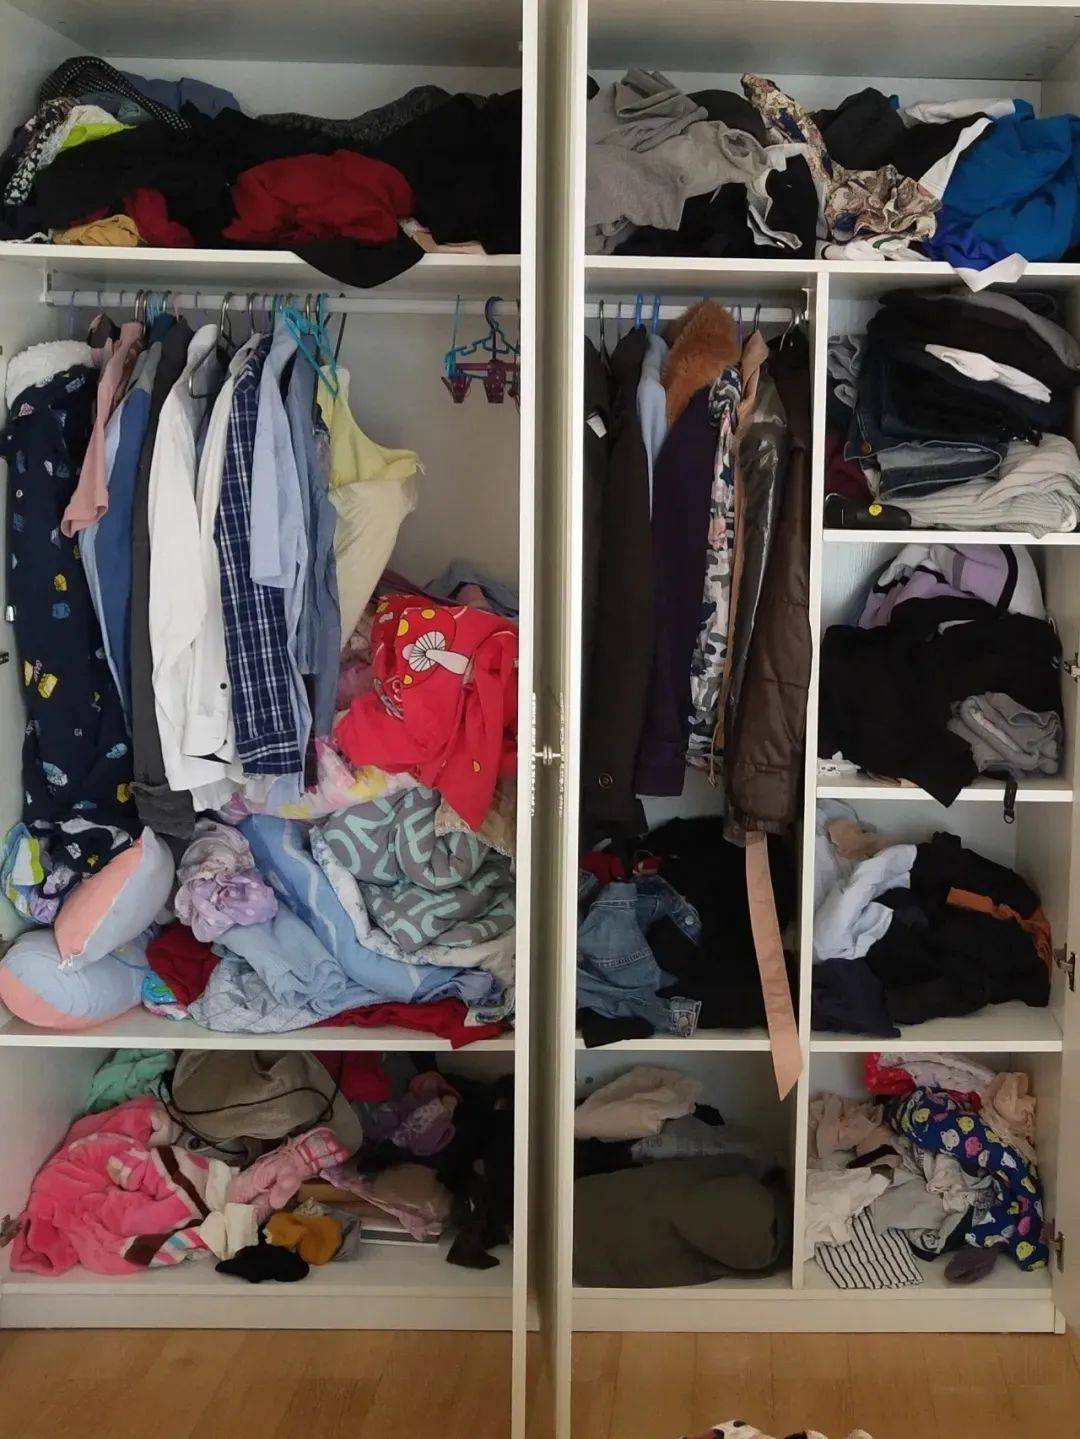 叠好的衣服要竖着放,比较方便寻找,拿的时候也不会打乱衣柜里的整洁